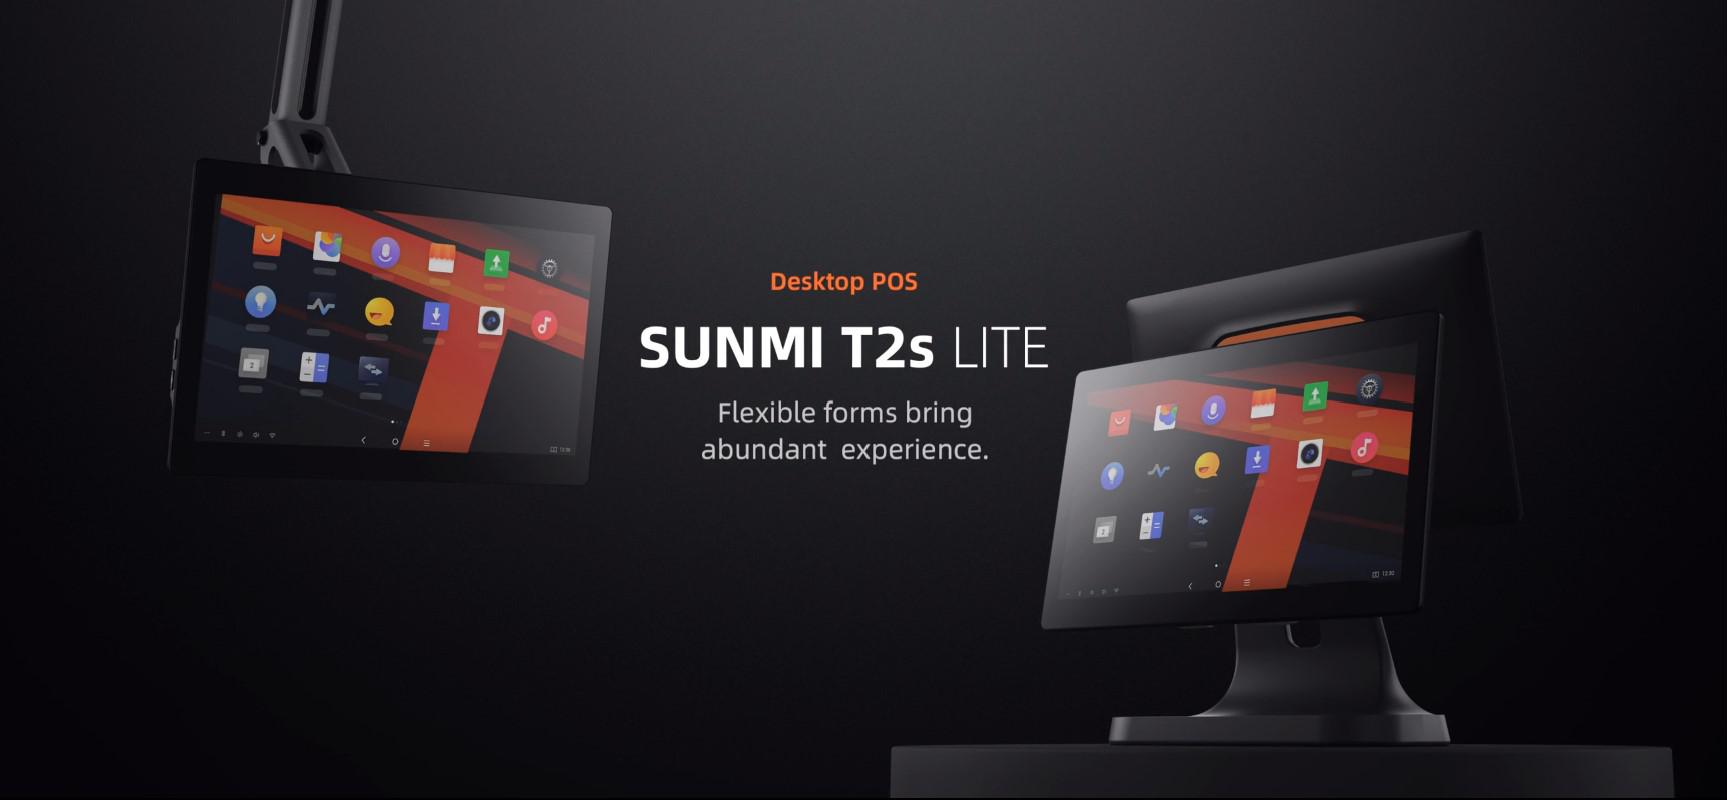 SUNMI DESKTOP POS SYSTEM L1572 T2s LITE EN (15.6" + 10.1", 4GB + 64GB, WiFi, EU Adapter)